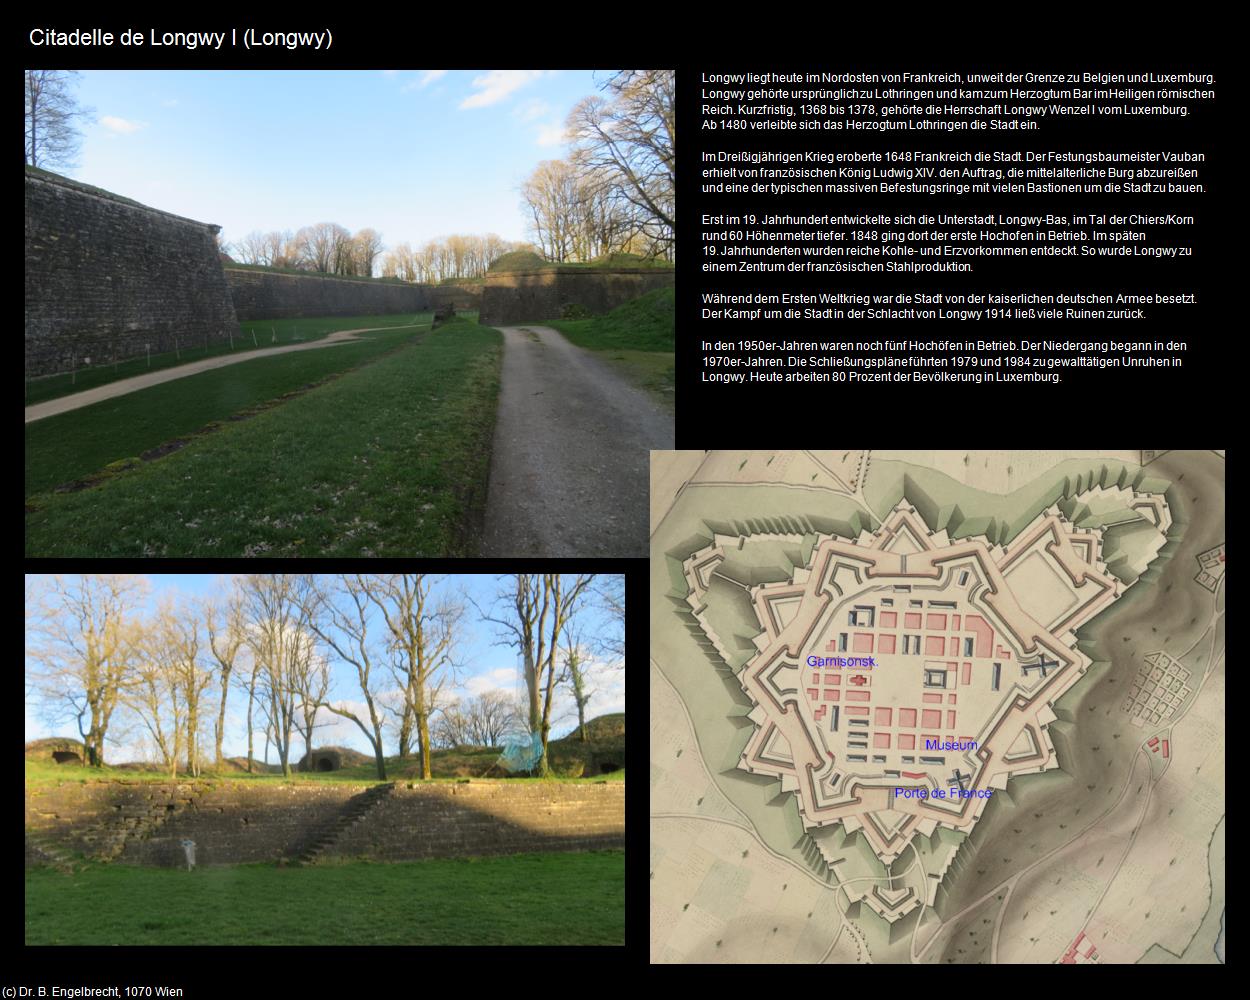 Citadelle de Longwy (Longwy (FR-GES)) in Kulturatlas-FRANKREICH